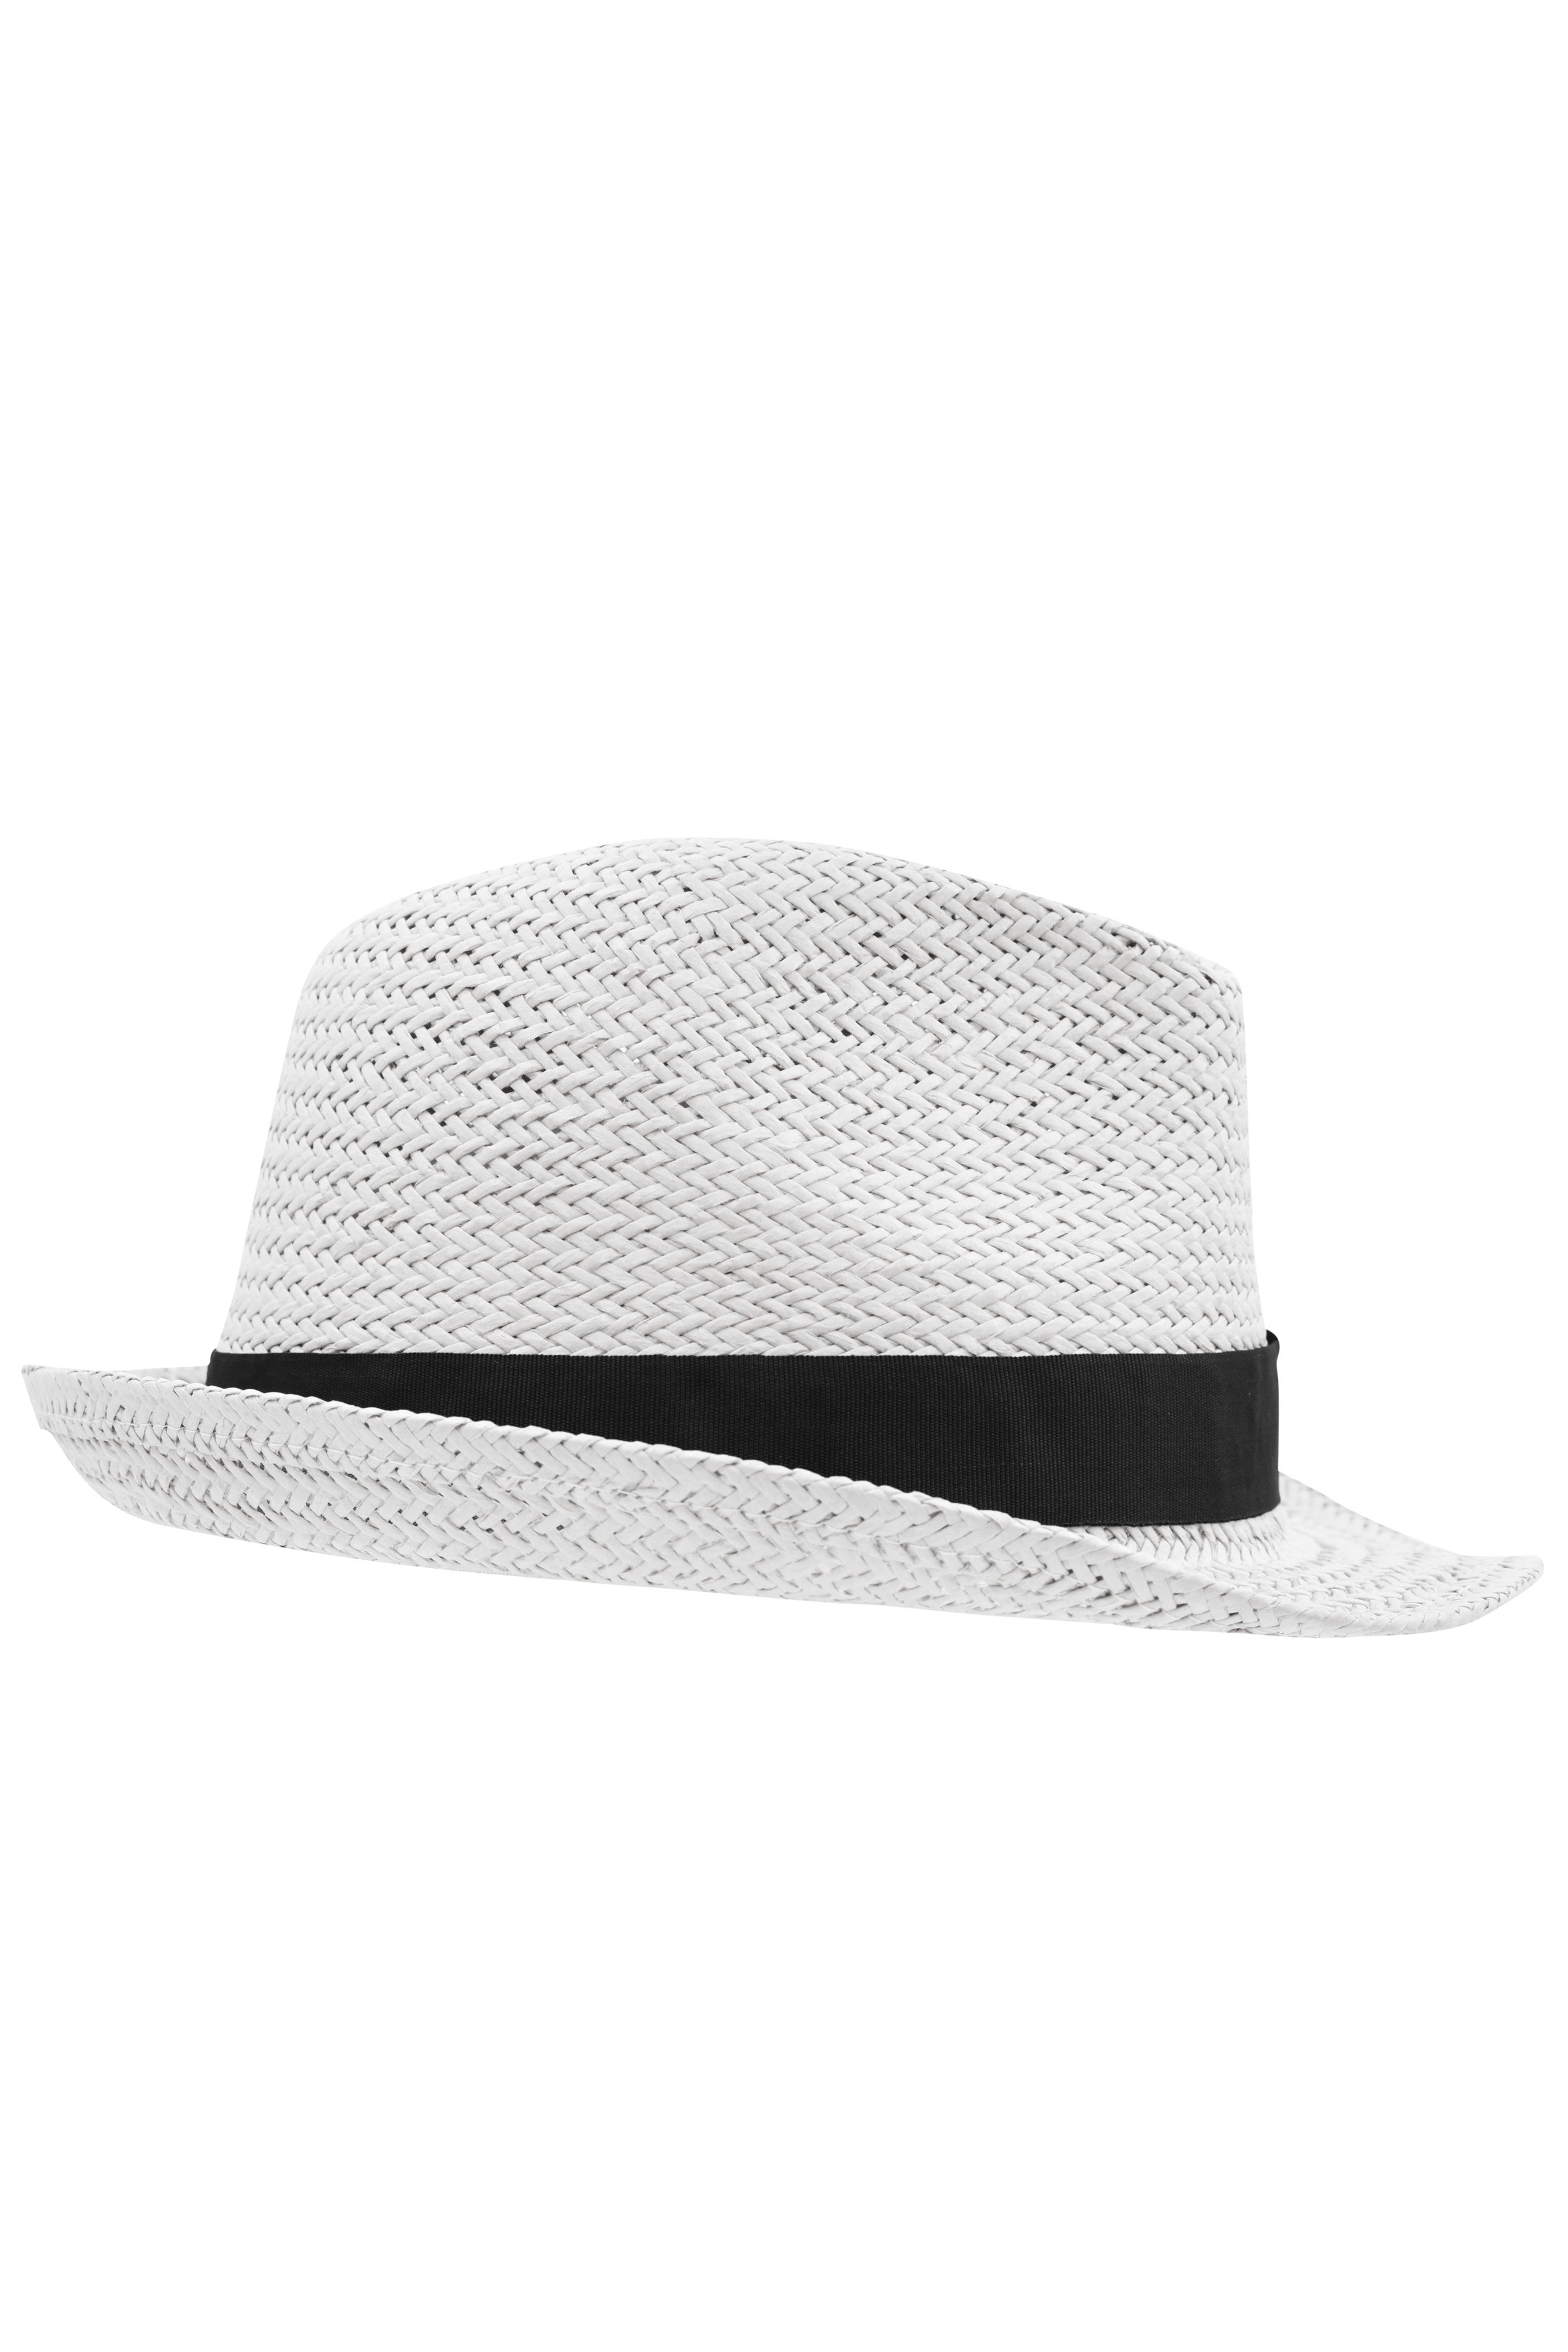 Unisex Urban Hat White/black-Promotextilien.de